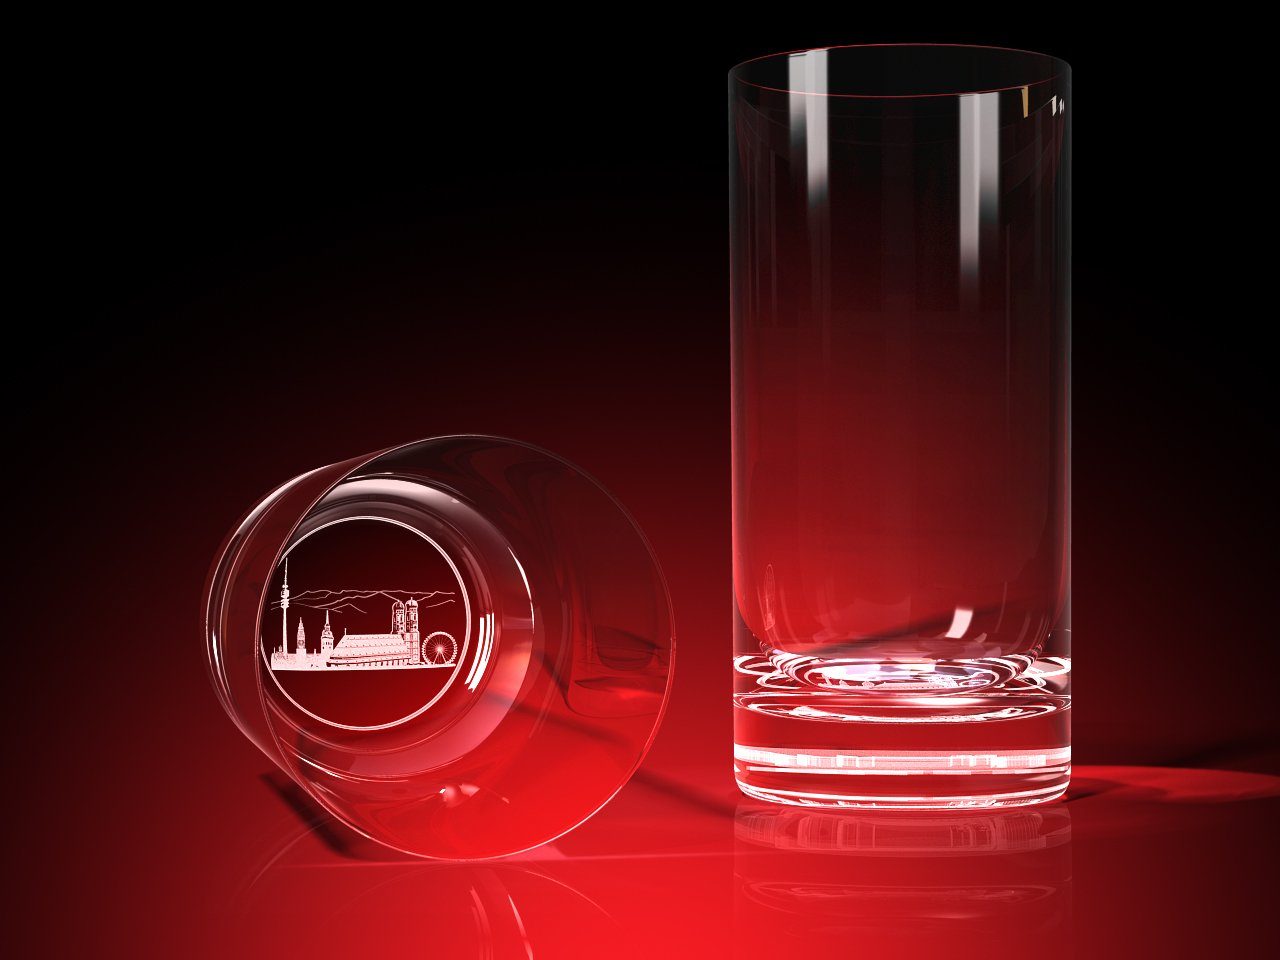 GLASFOTO.COM Glas München Silhouette - Trinkglas (Bierglas) 0,4 l, 0,4 l - Ø 76 x 160 mm